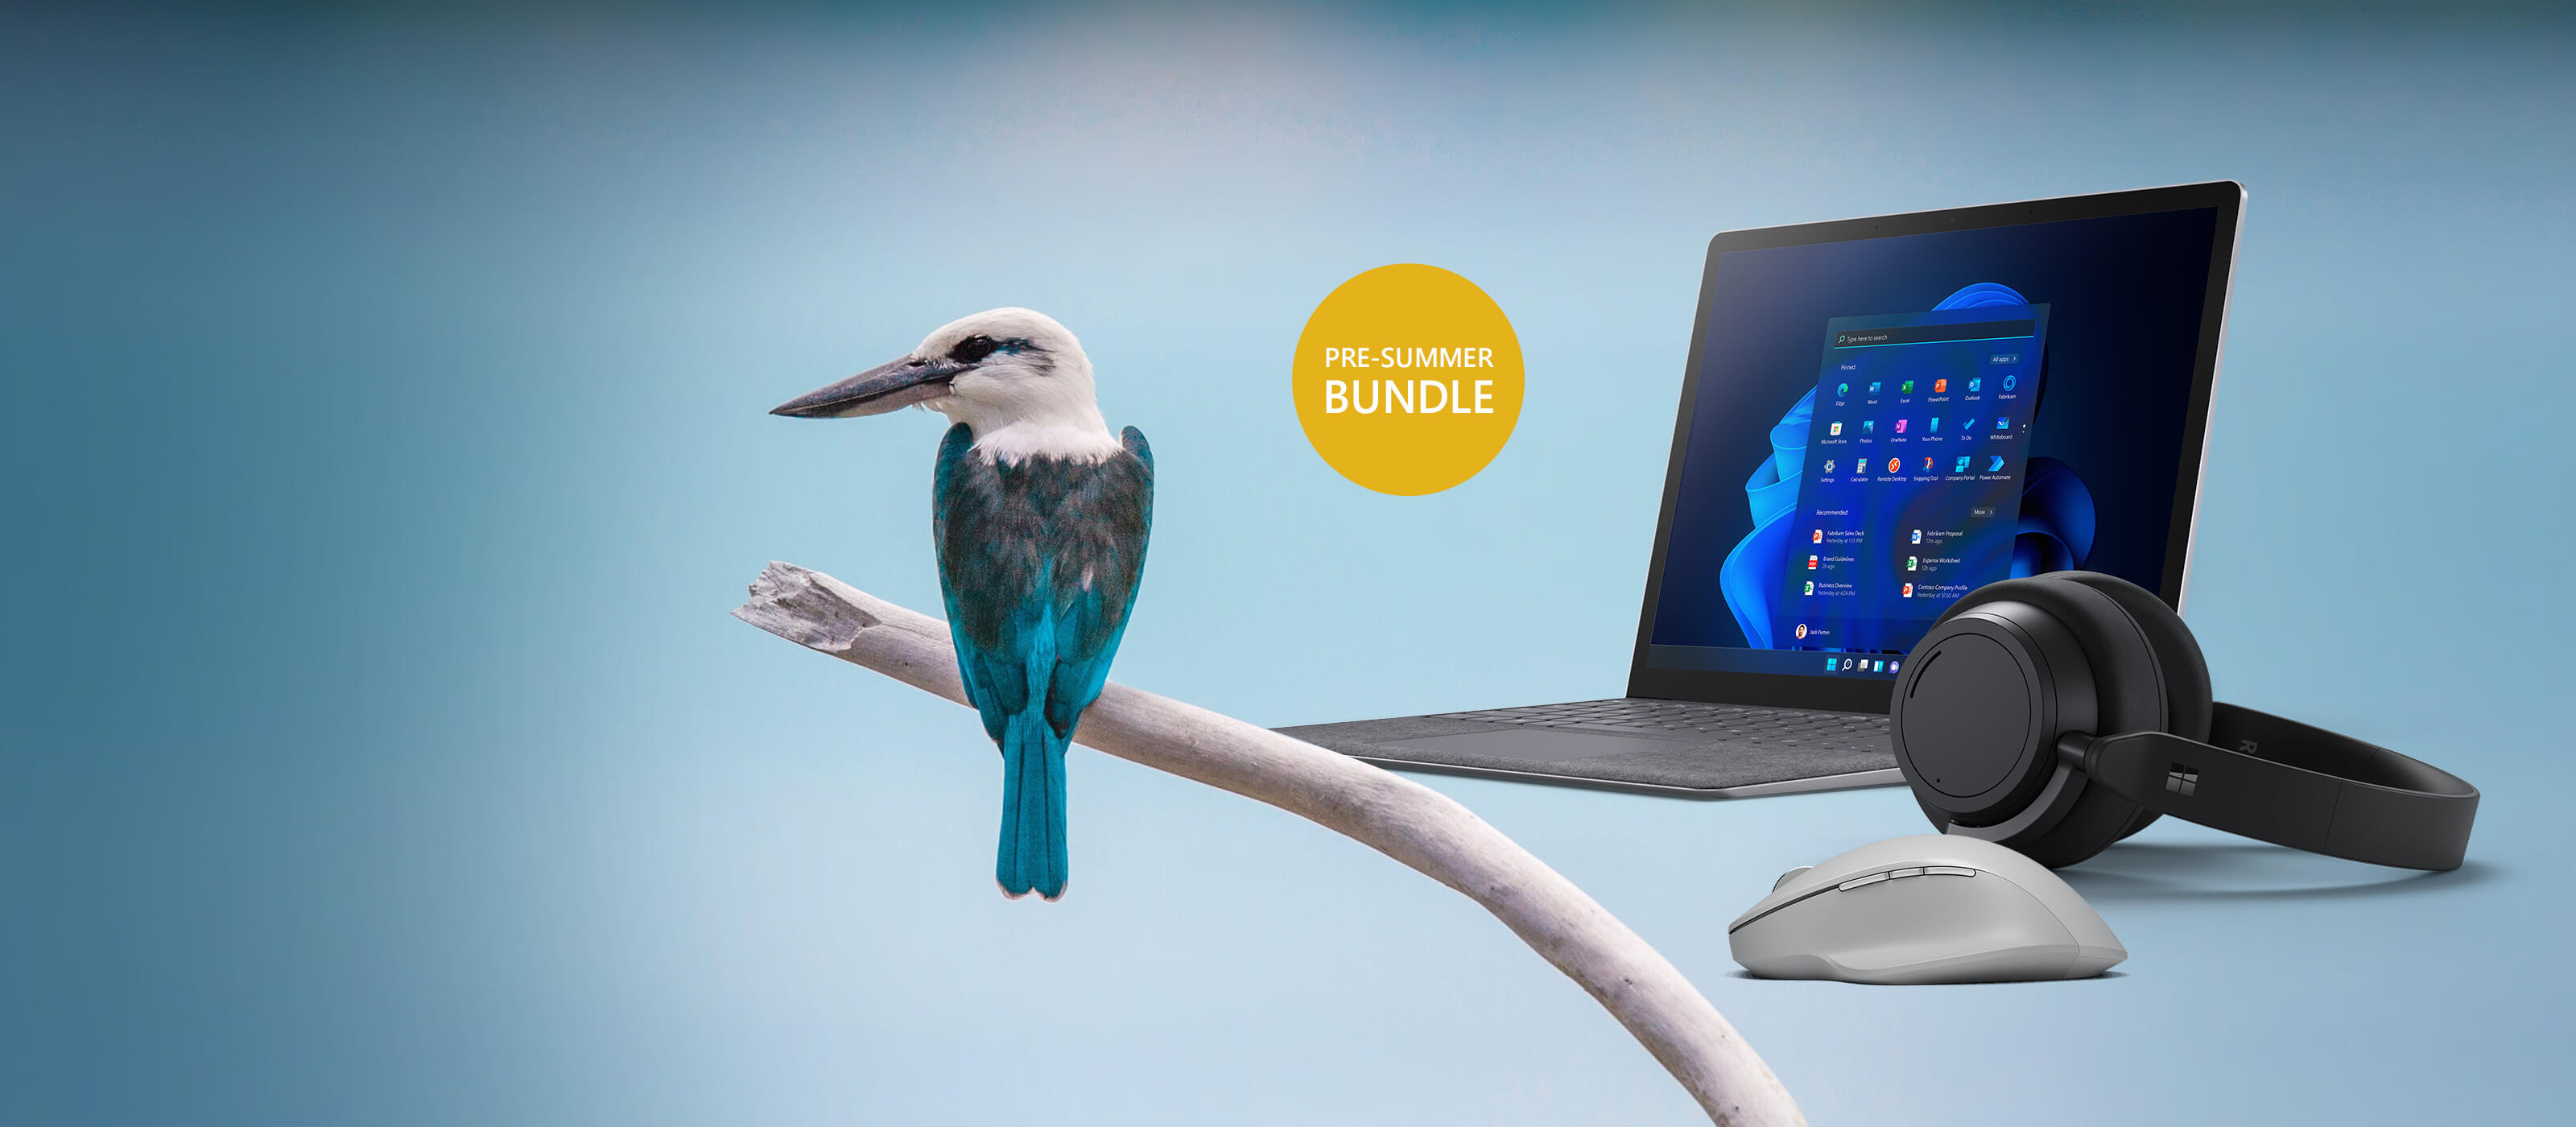 Der Surface Laptop 4 ist neben einem Vogel vor einem blauen Hintergrund platziert